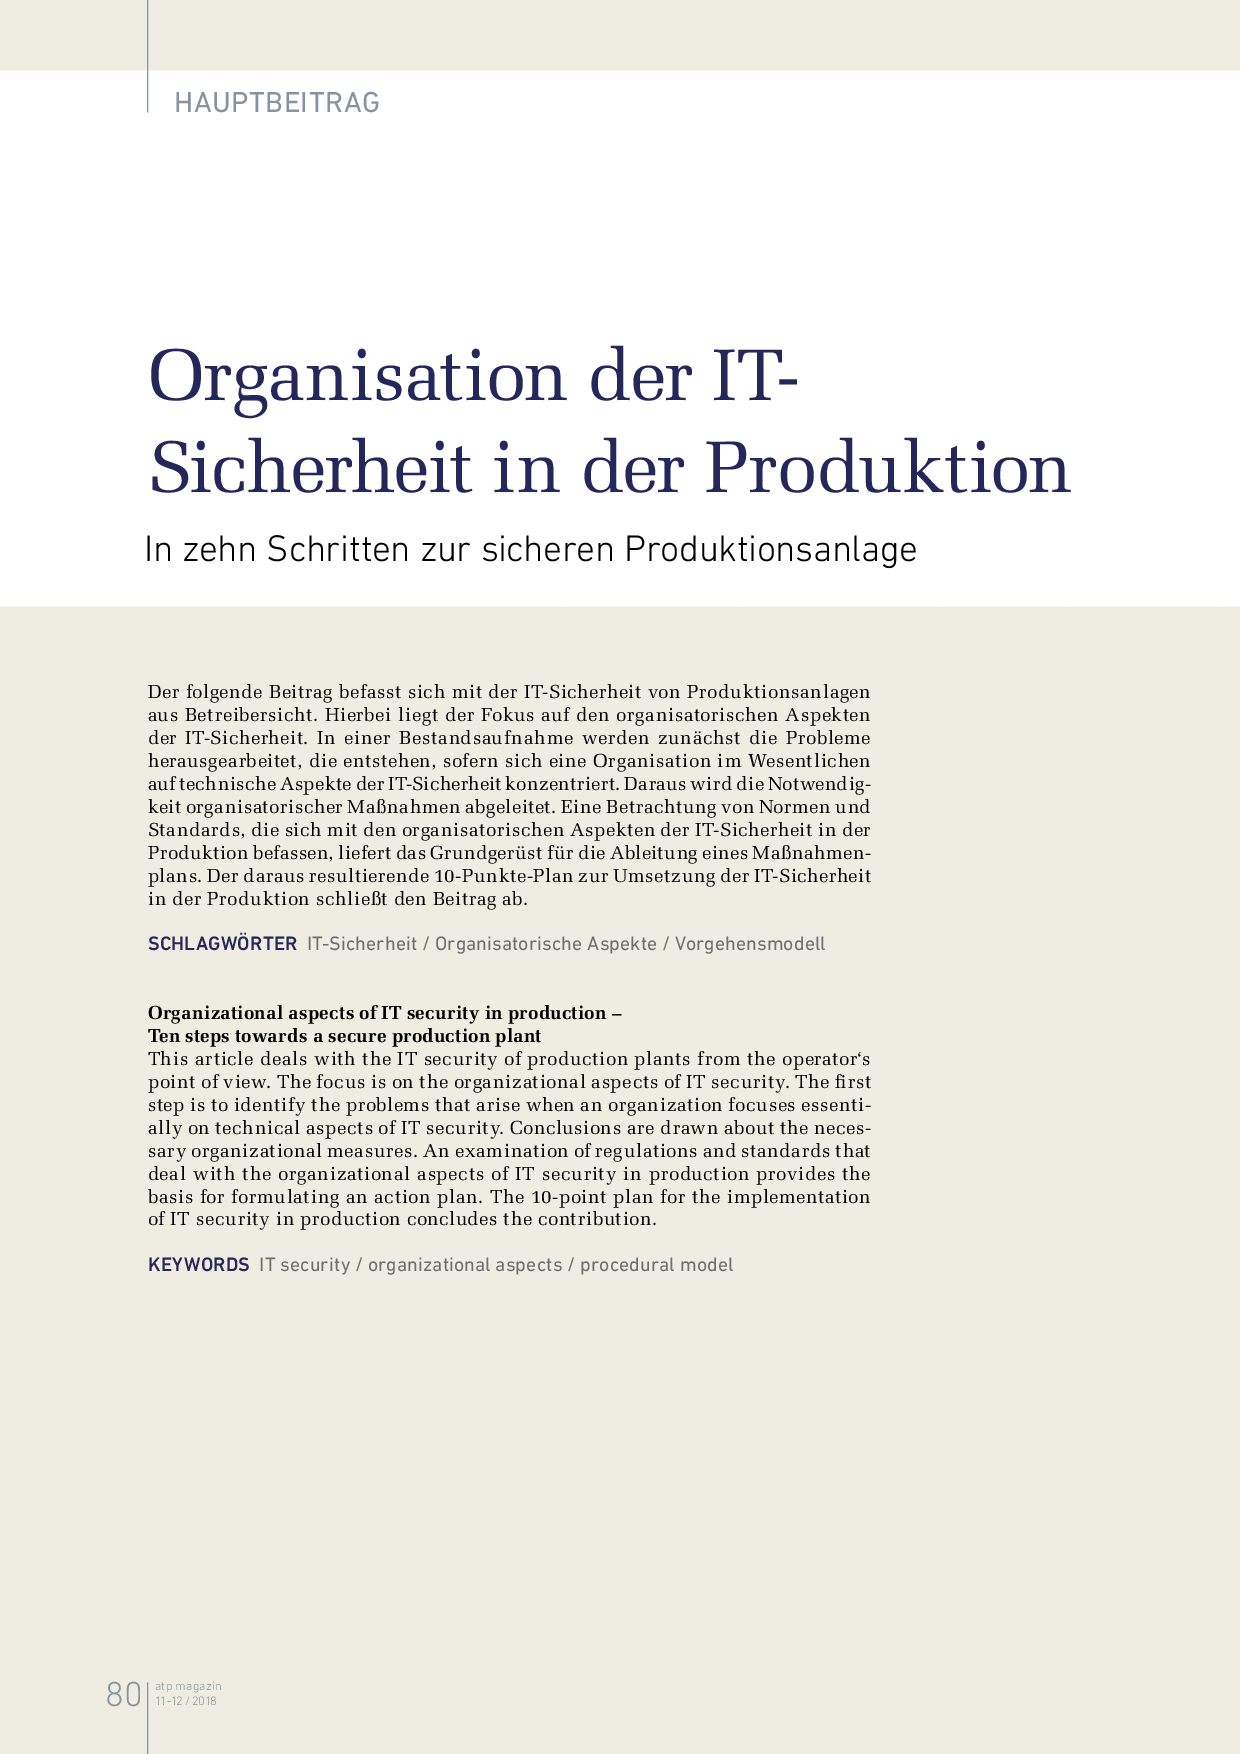 Organisation der IT-Sicherheit in der Produktion